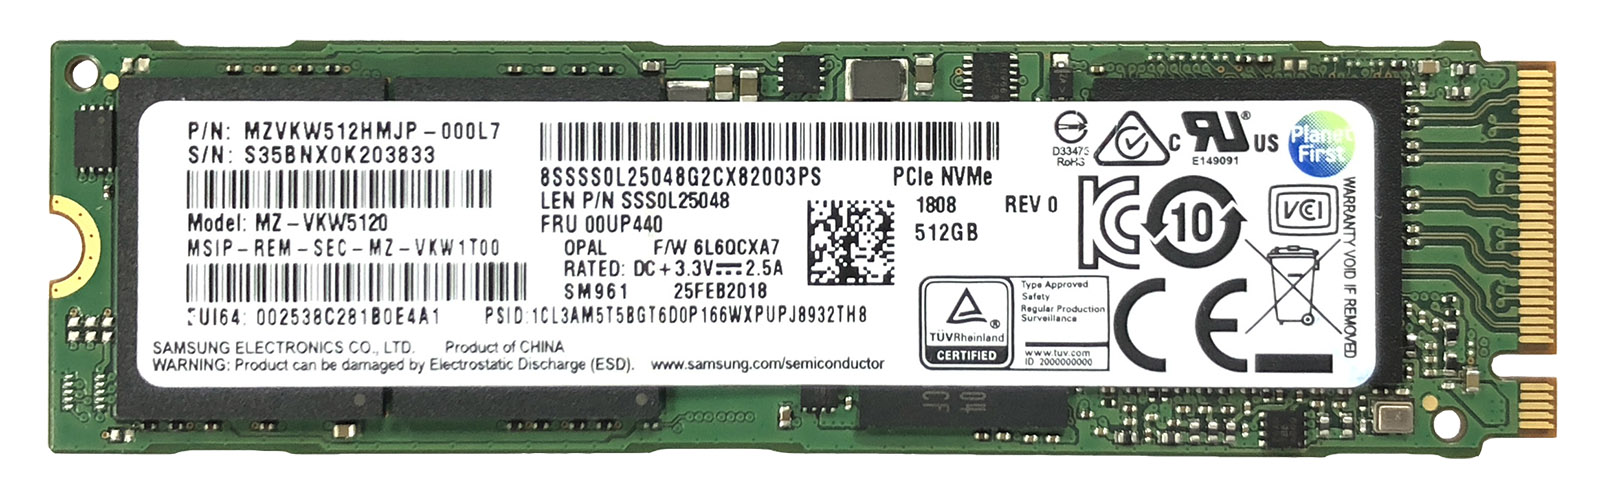 Price cut block Margaret Mitchell Samsung SM961 Series (M.2 PCIe Gen3 SSD)